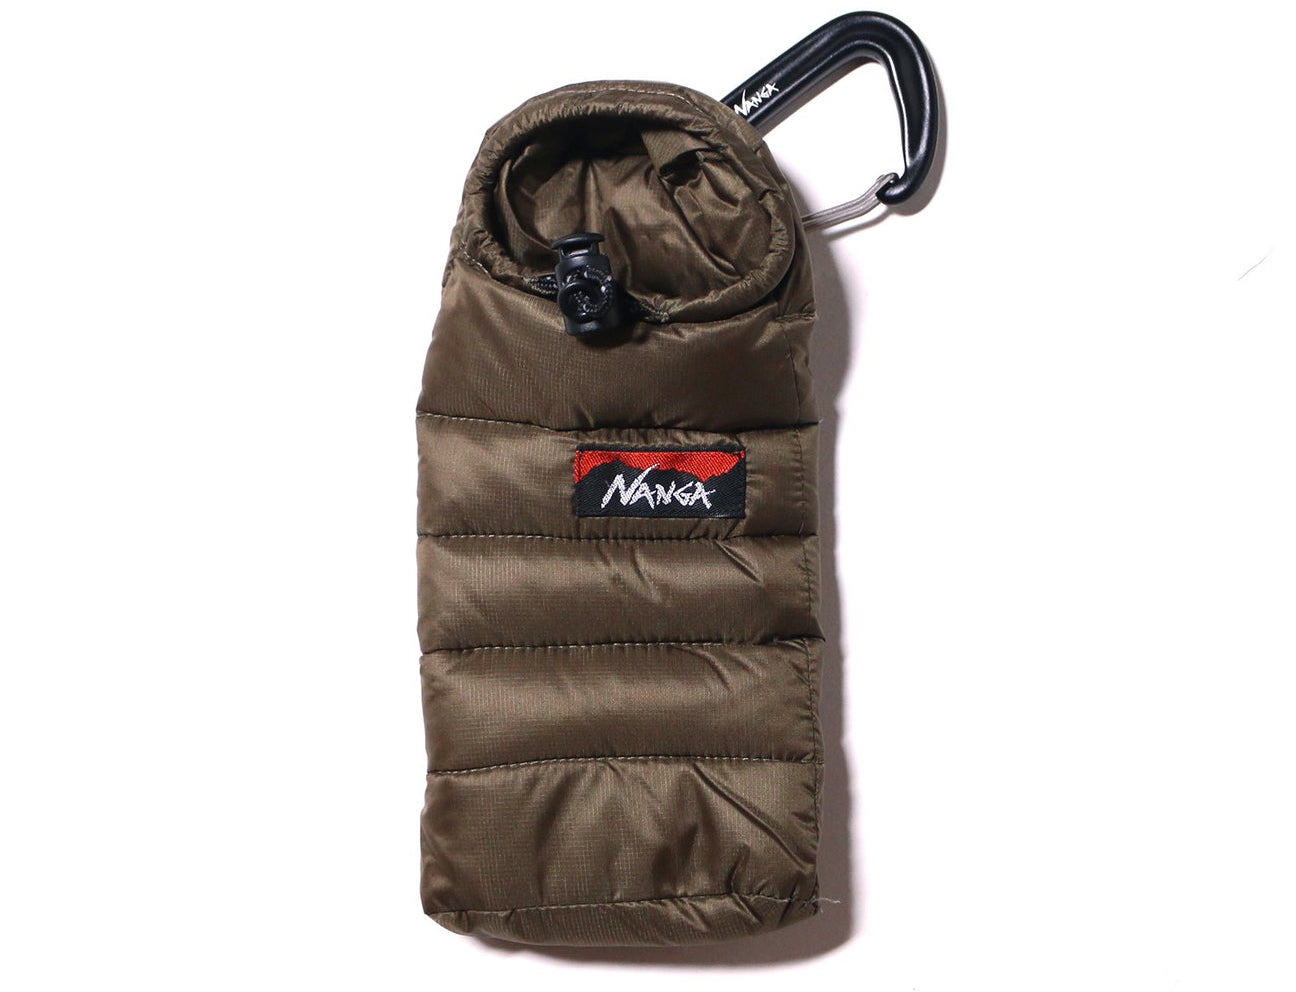 Nanga Mini Sleeping Bag Phone Case 迷你睡袋手機袋+金屬掛扣